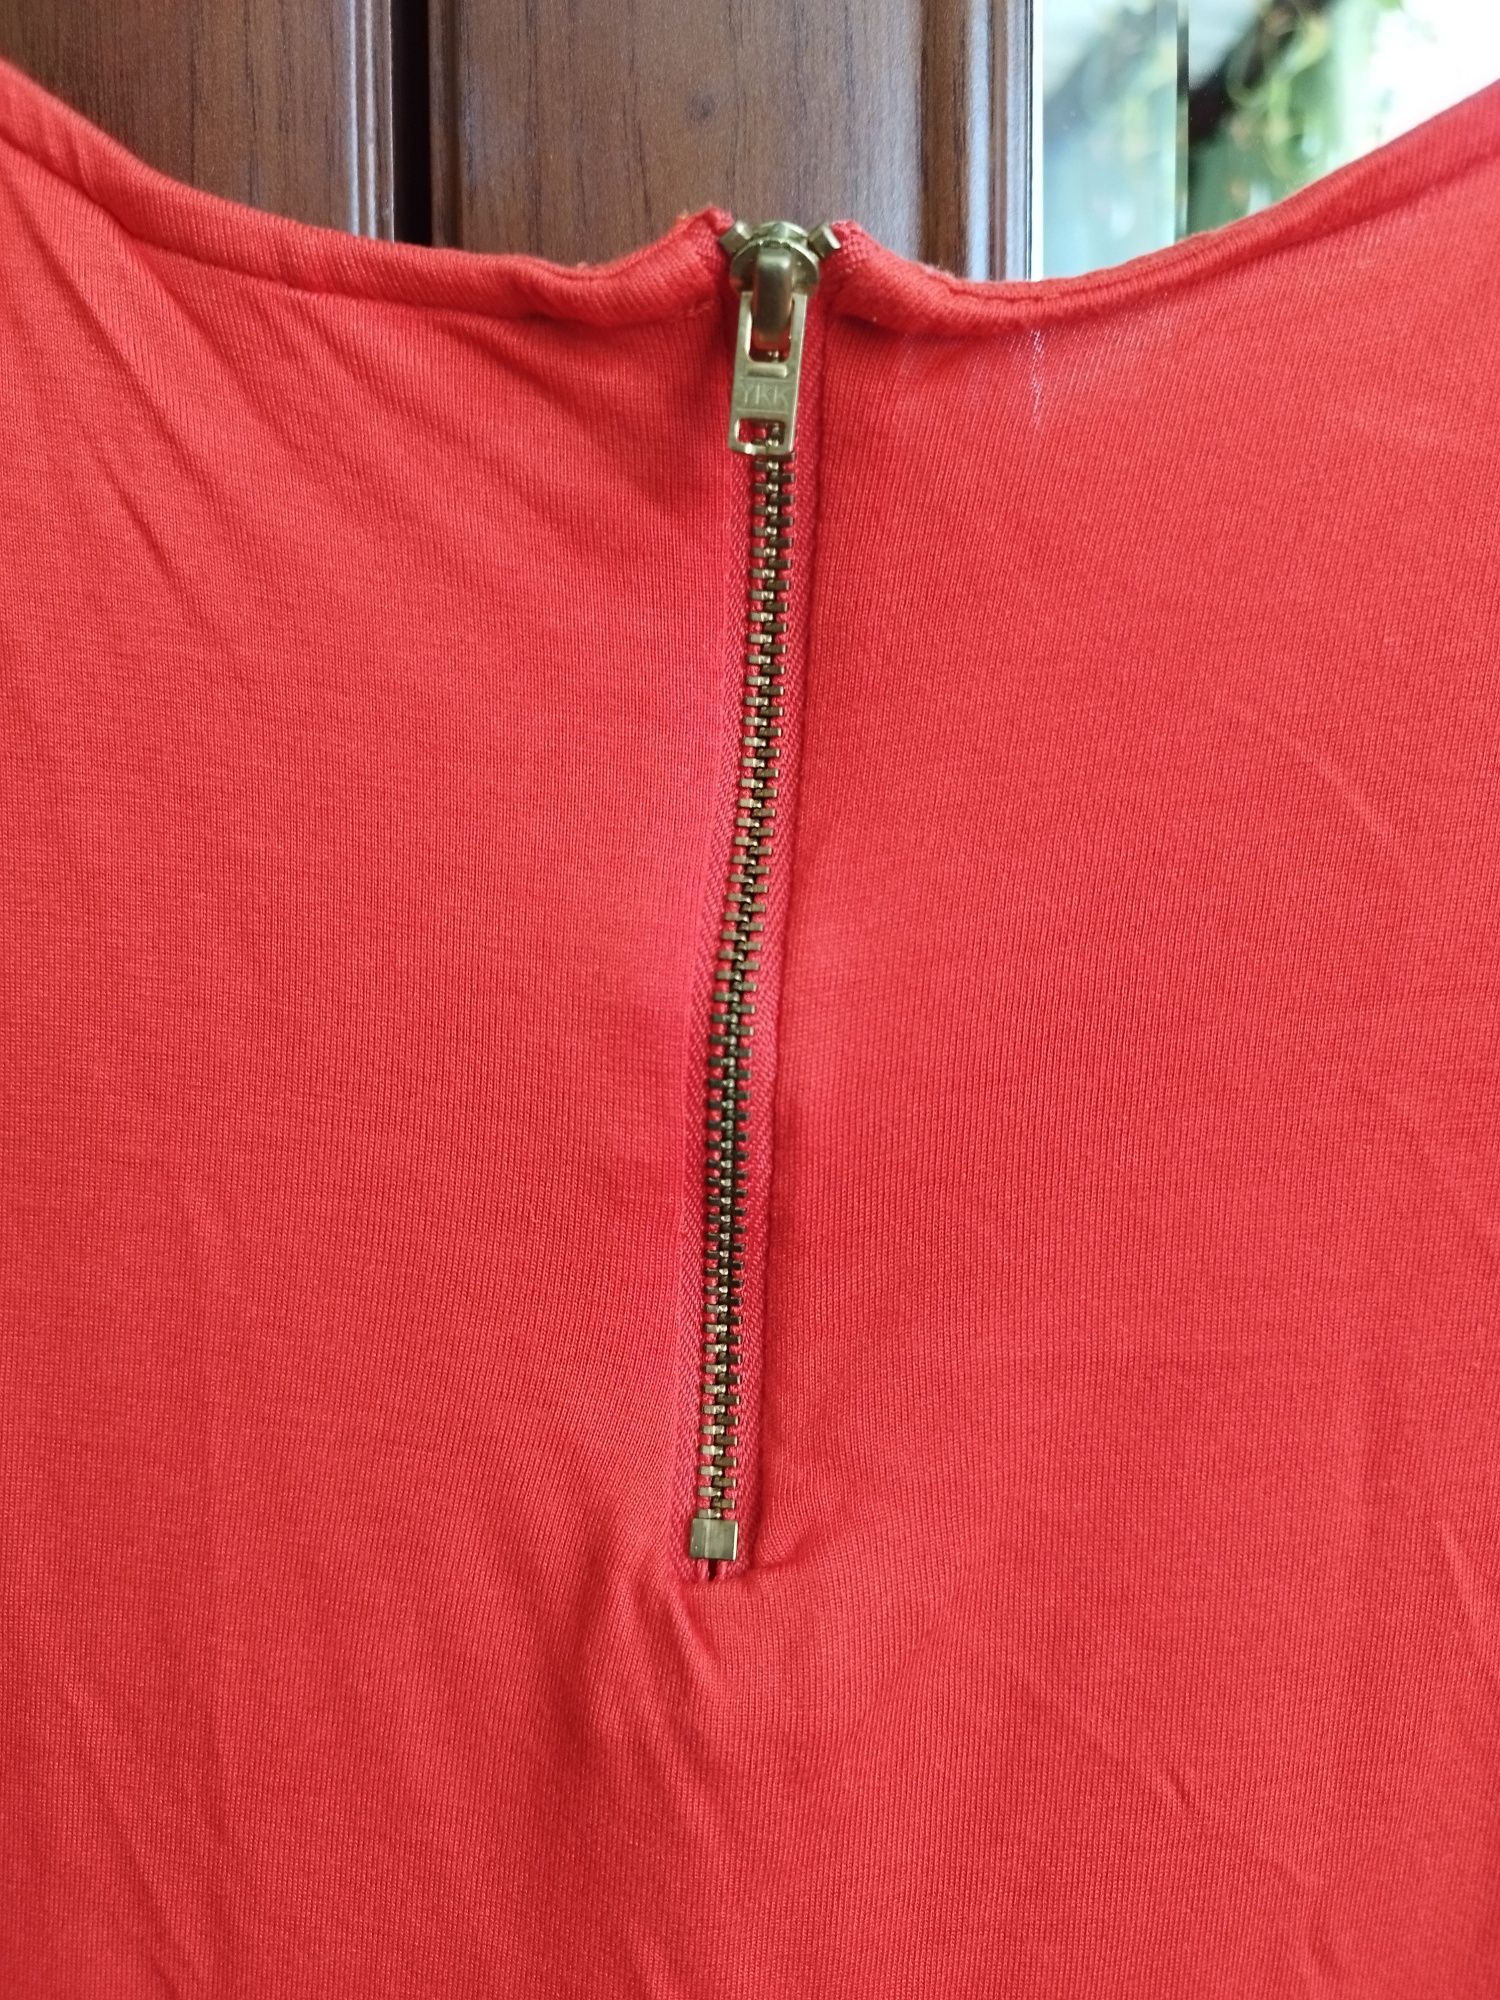 Koszulka marki Next kolor czerwony, rozmiar 34